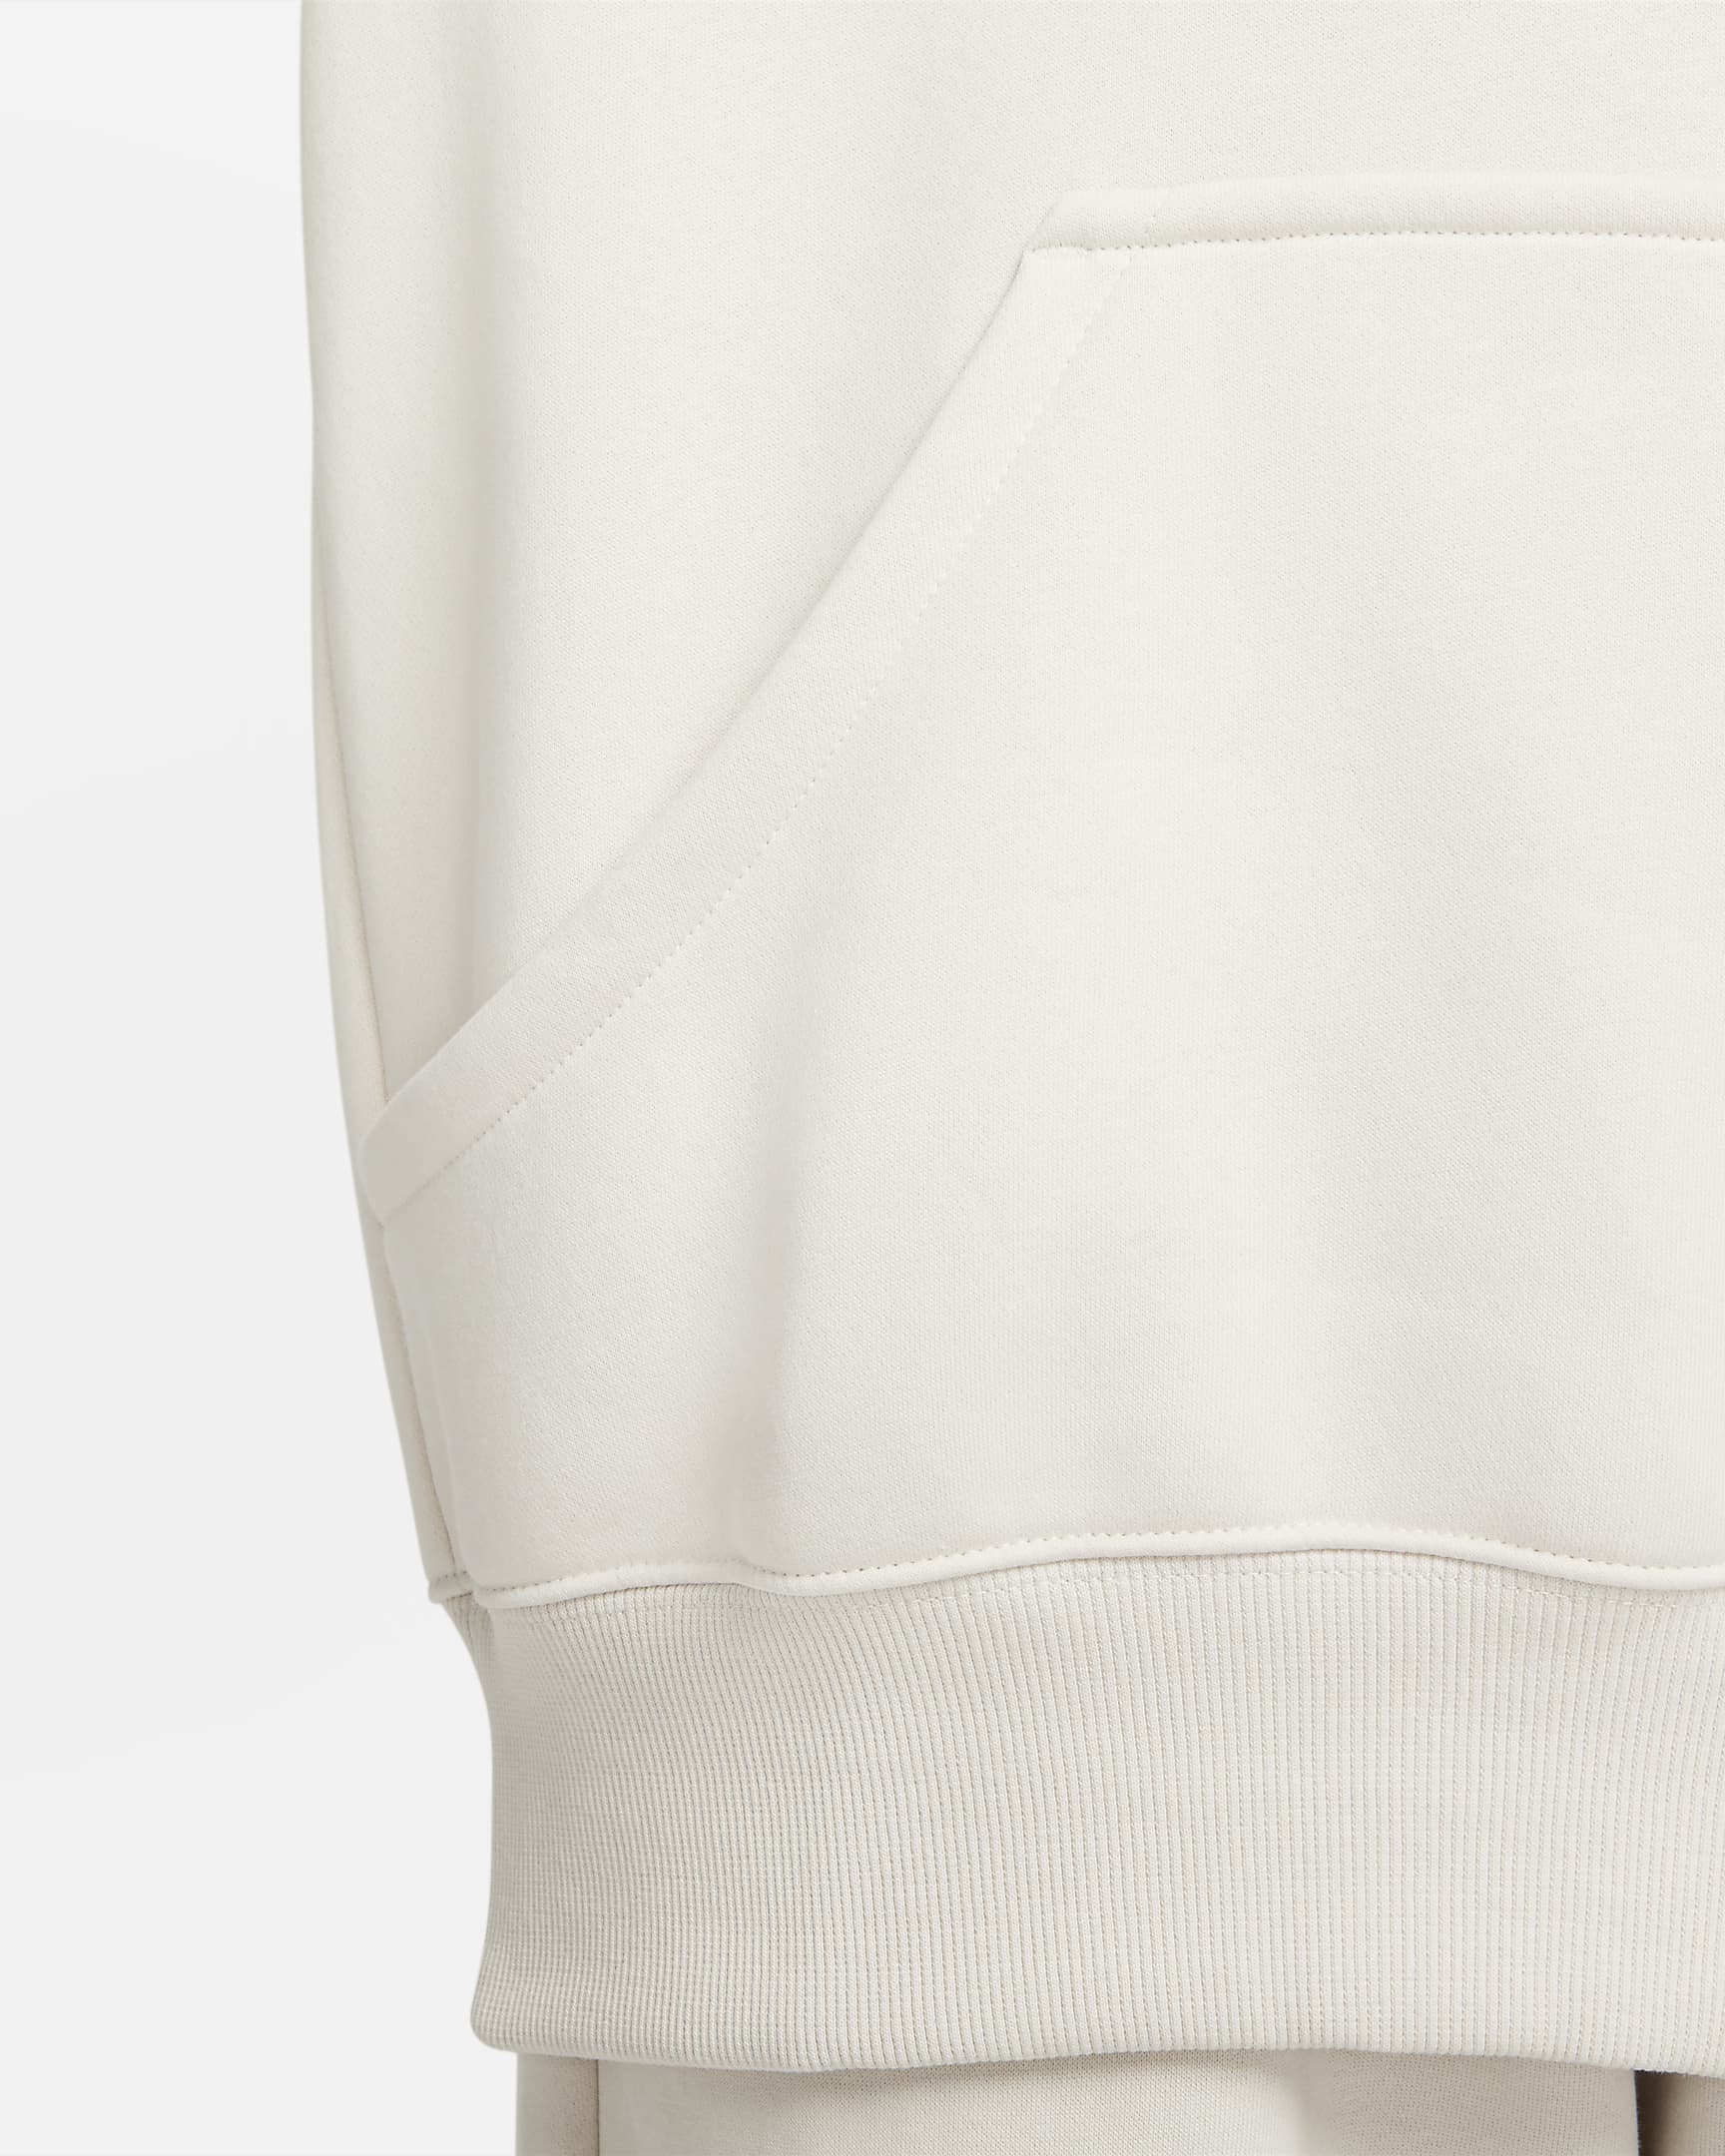 Nike Sportswear Phoenix Fleece Women's Oversized Pullover Hoodie - Light Orewood Brown/Sail